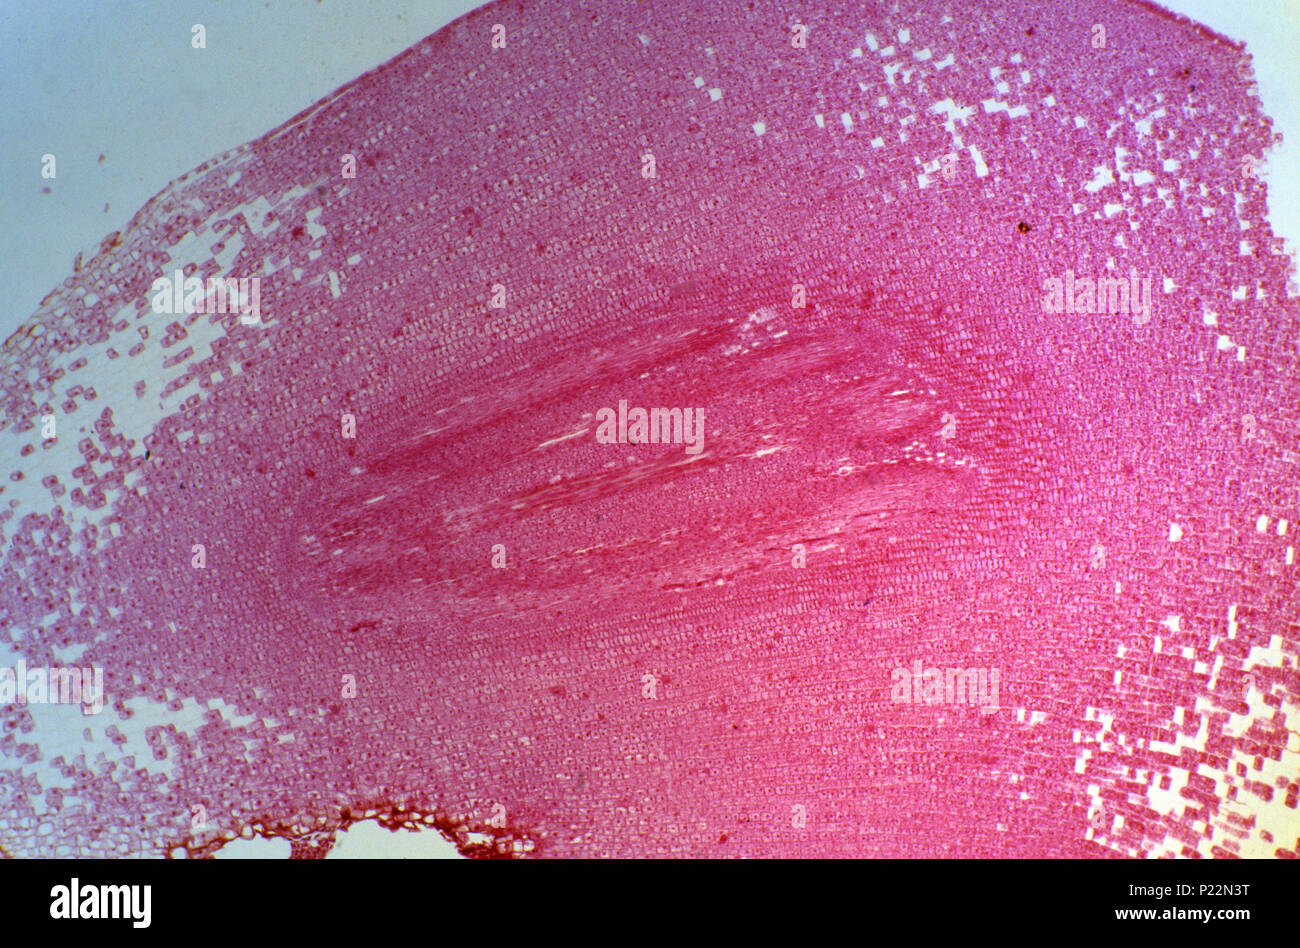 Nucleolus. 8x Stock Photo